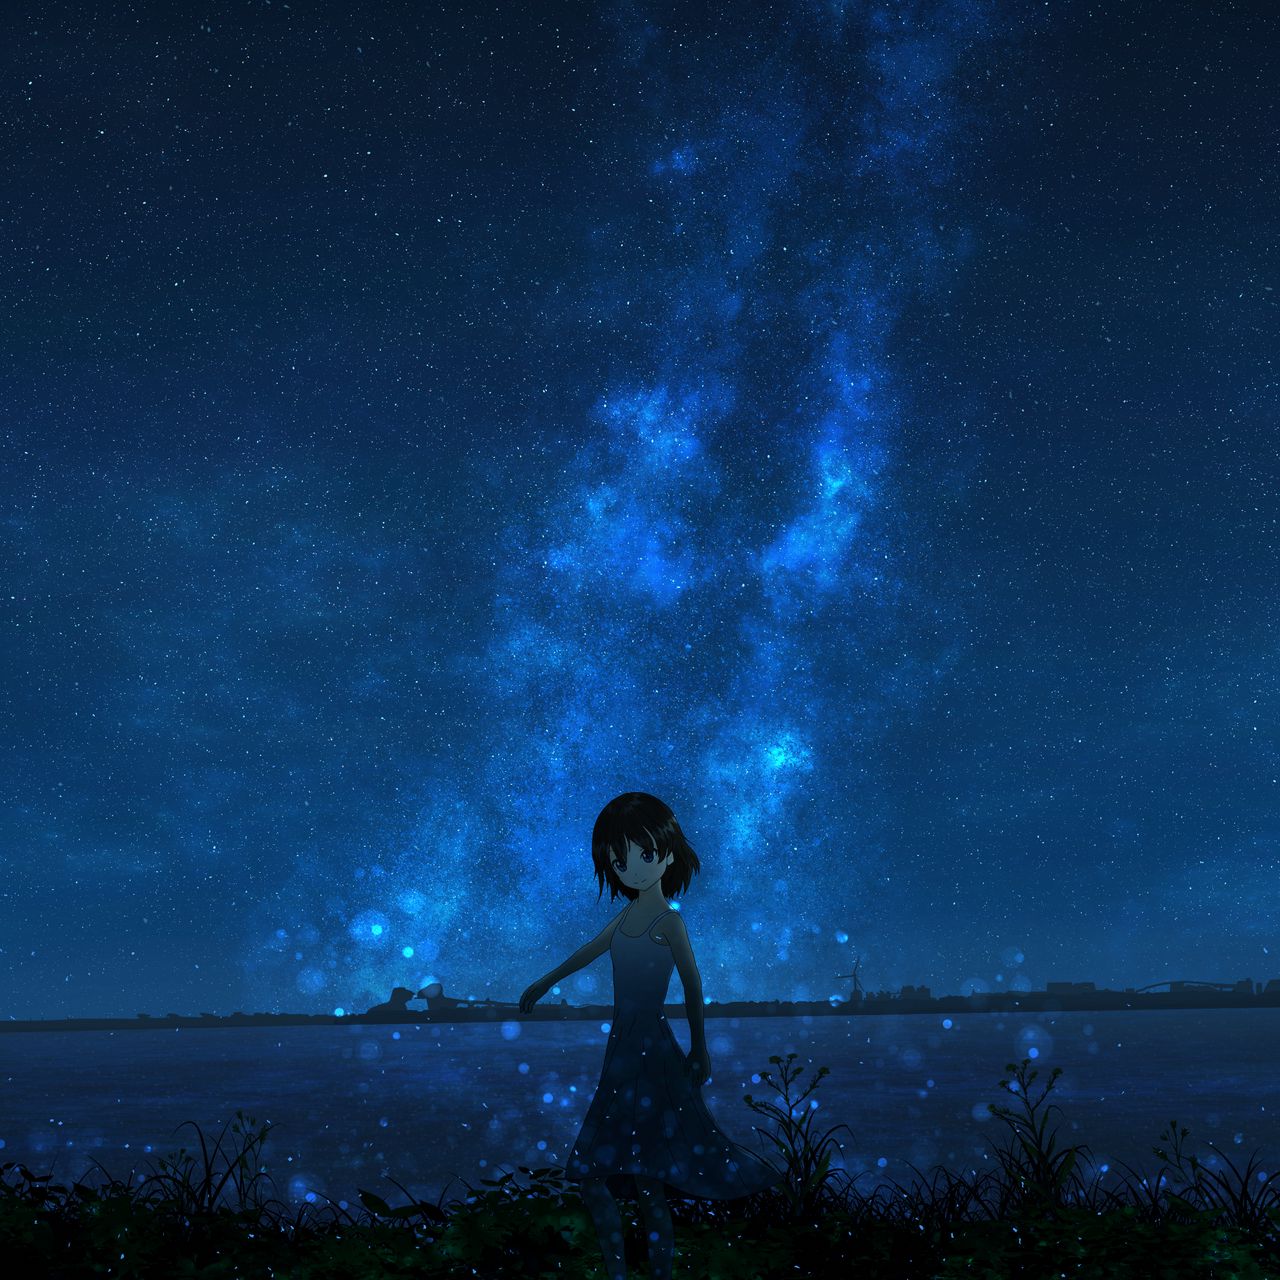 Starry sky: Cảm giác thú vị của việc nhìn ngắm bầu trời đầy sao luôn khiến chúng ta cảm thấy bình yên và yên tâm. Hãy giãi bày tâm hồn trong không gian bao la của bầu trời đêm với hình ảnh đẹp của chúng tôi.